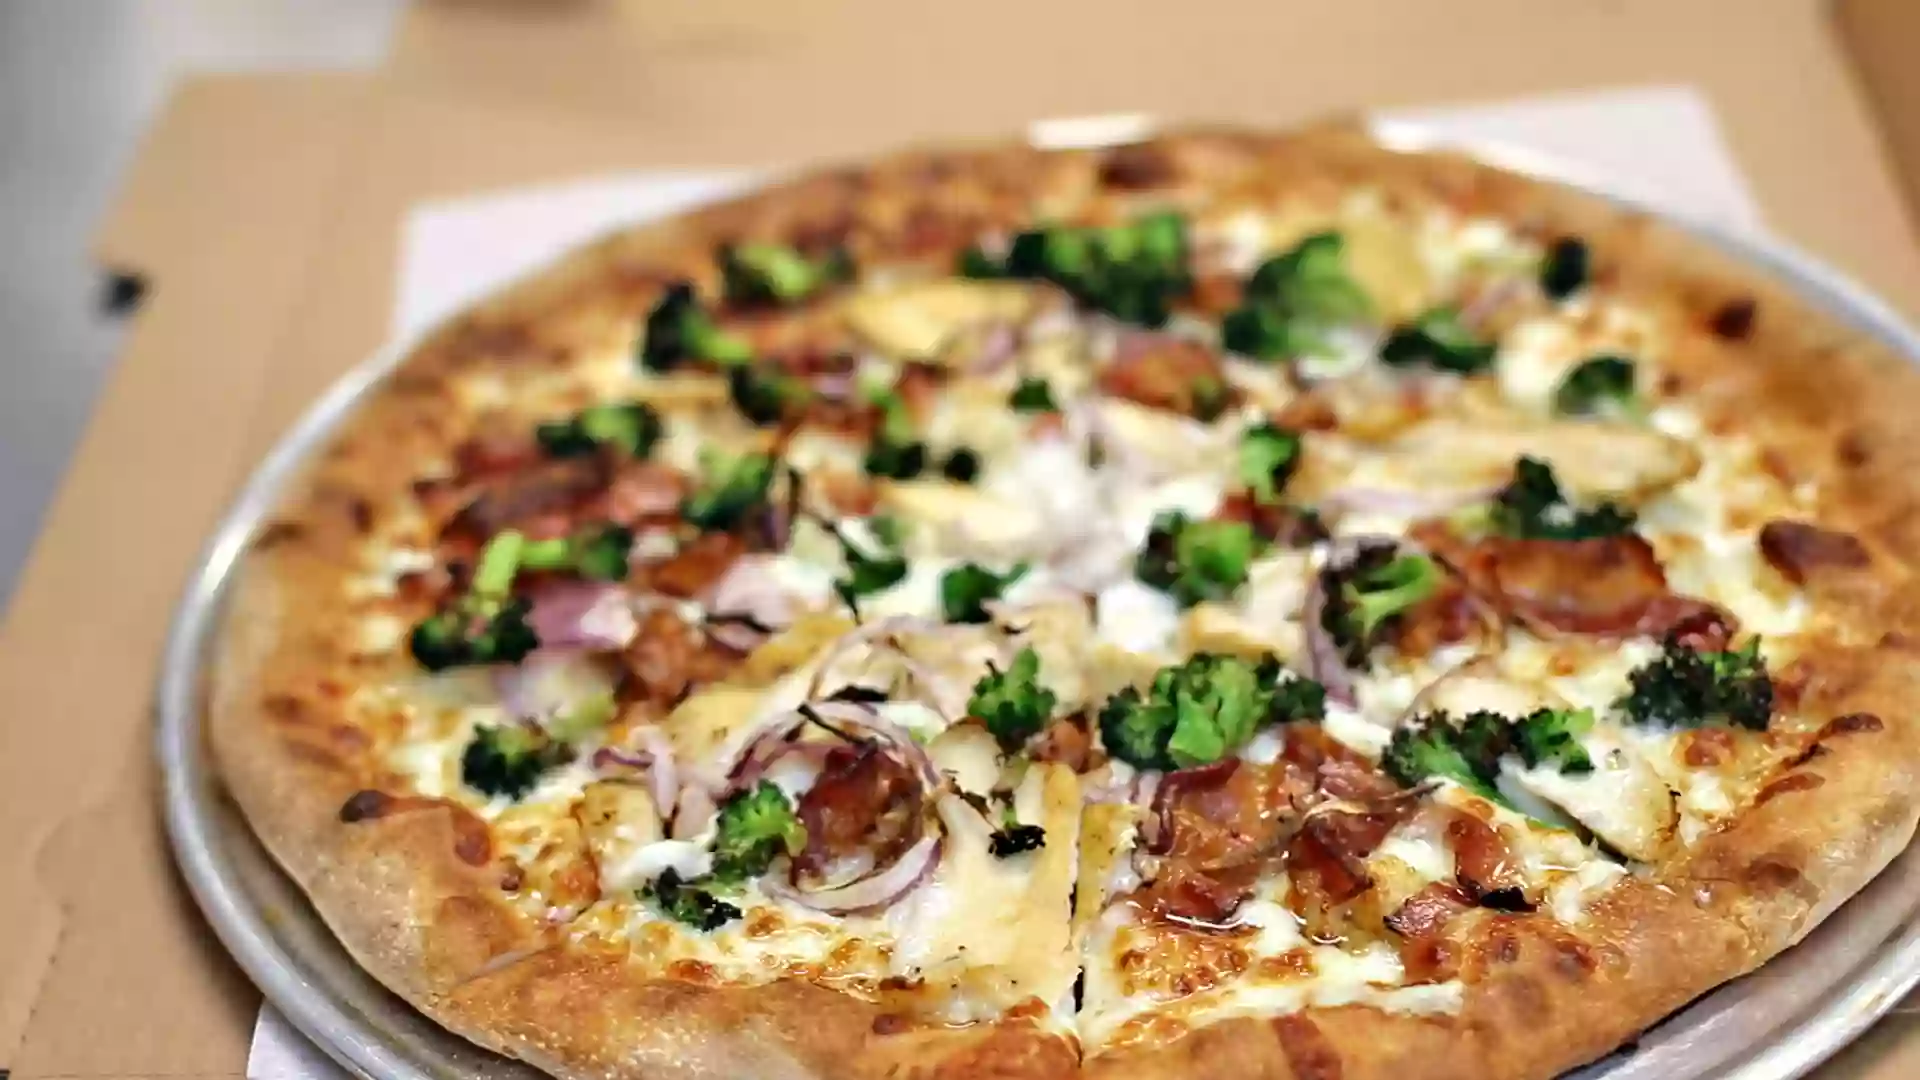 Bosco's Pizza Kitchen | Pizza | Pasta | Subs | Salads